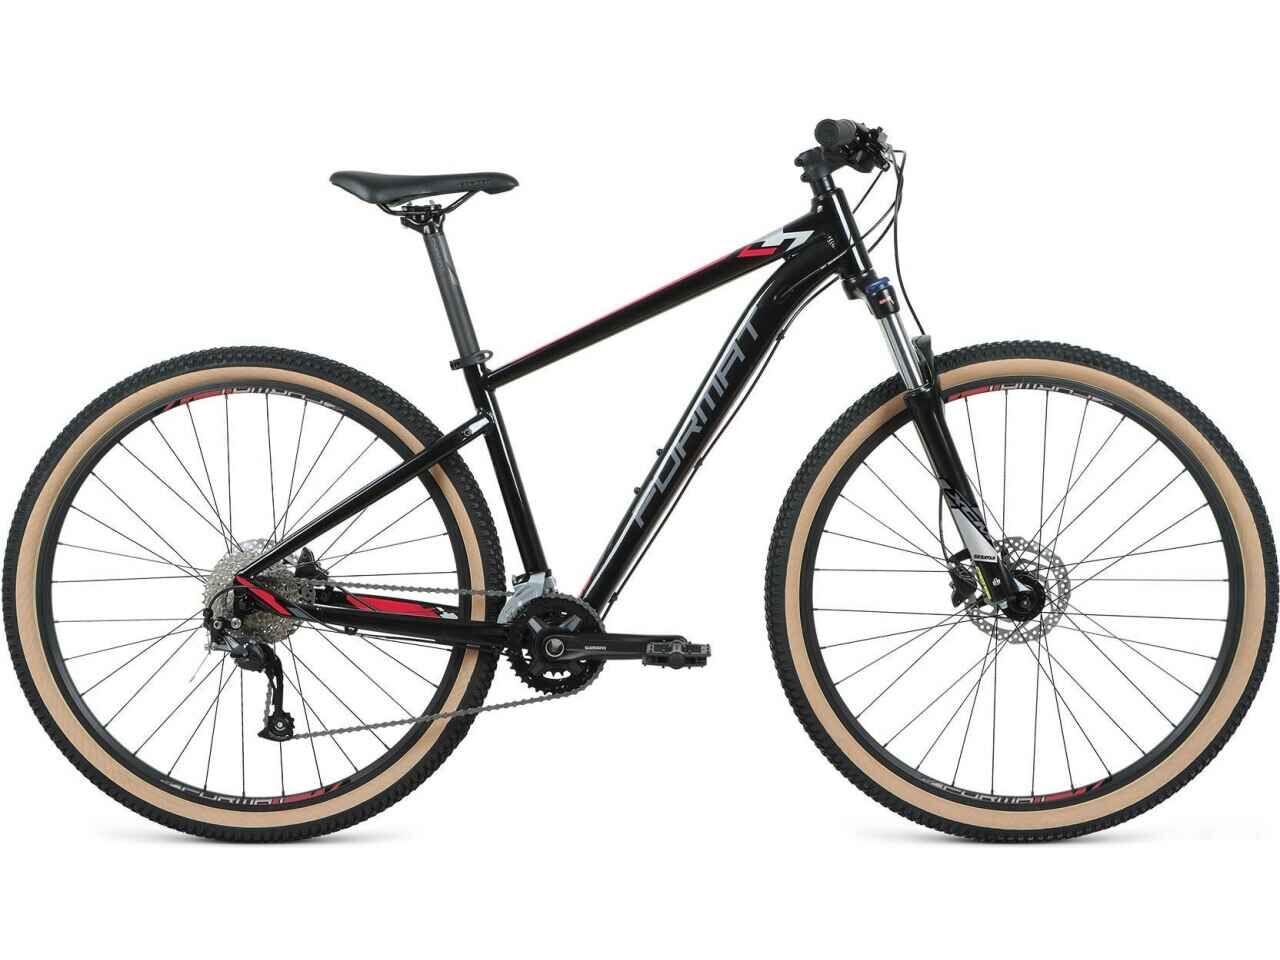 Велосипед Format 1412 27.5 S 2021 (черный)